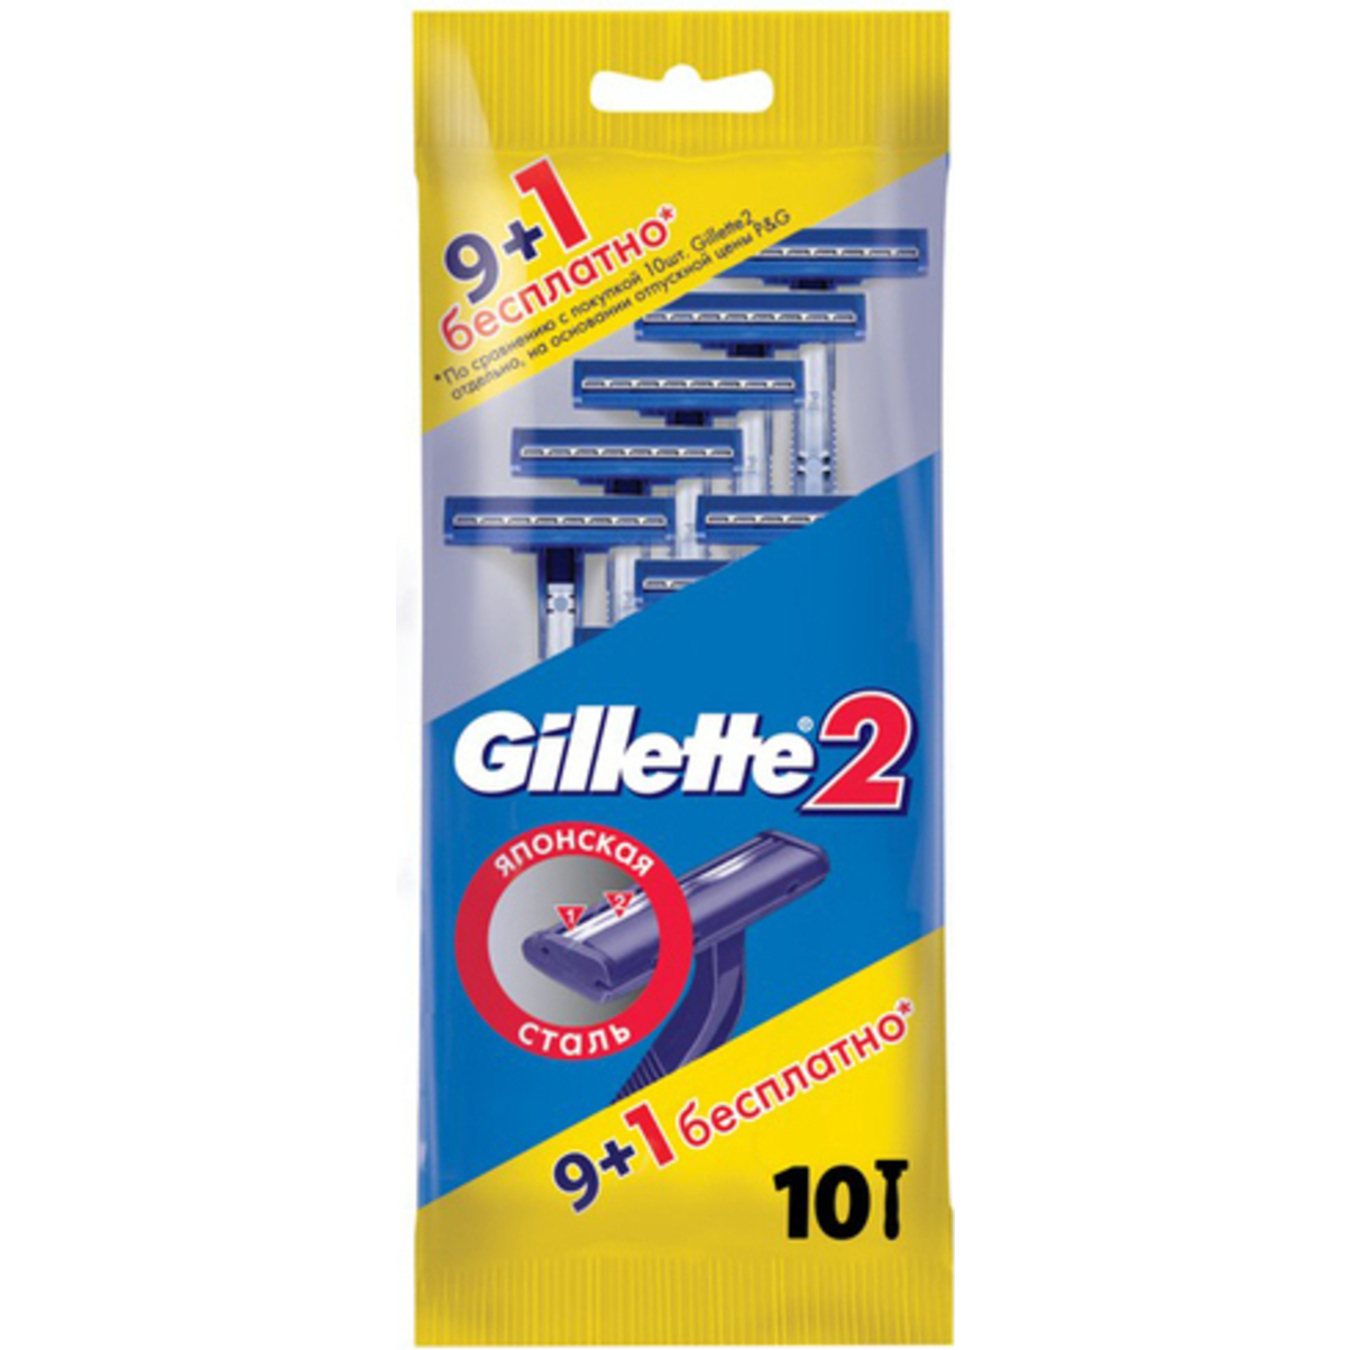 Gillette 2 Disposable Razors 10pcs